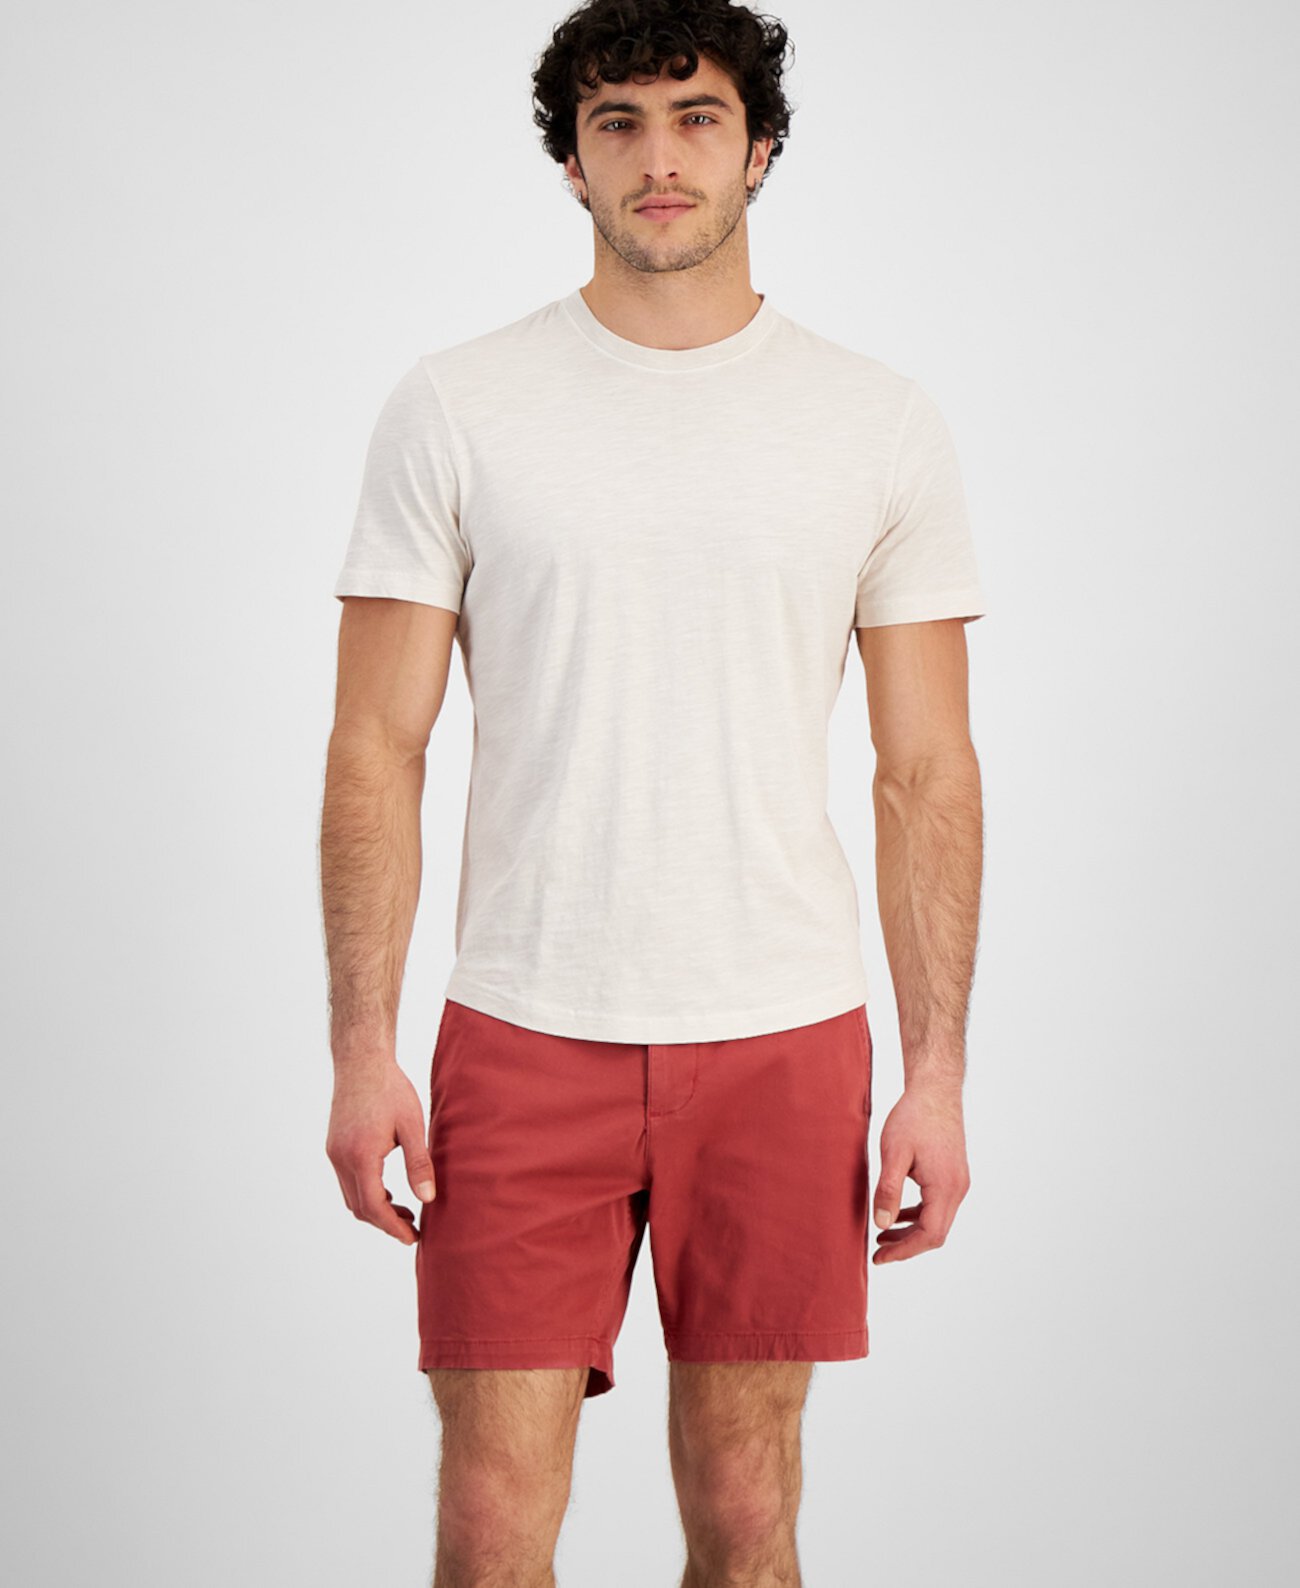 Мужская хлопковая футболка с закругленным подолом Sun & Stone для Macy's Sun & Stone